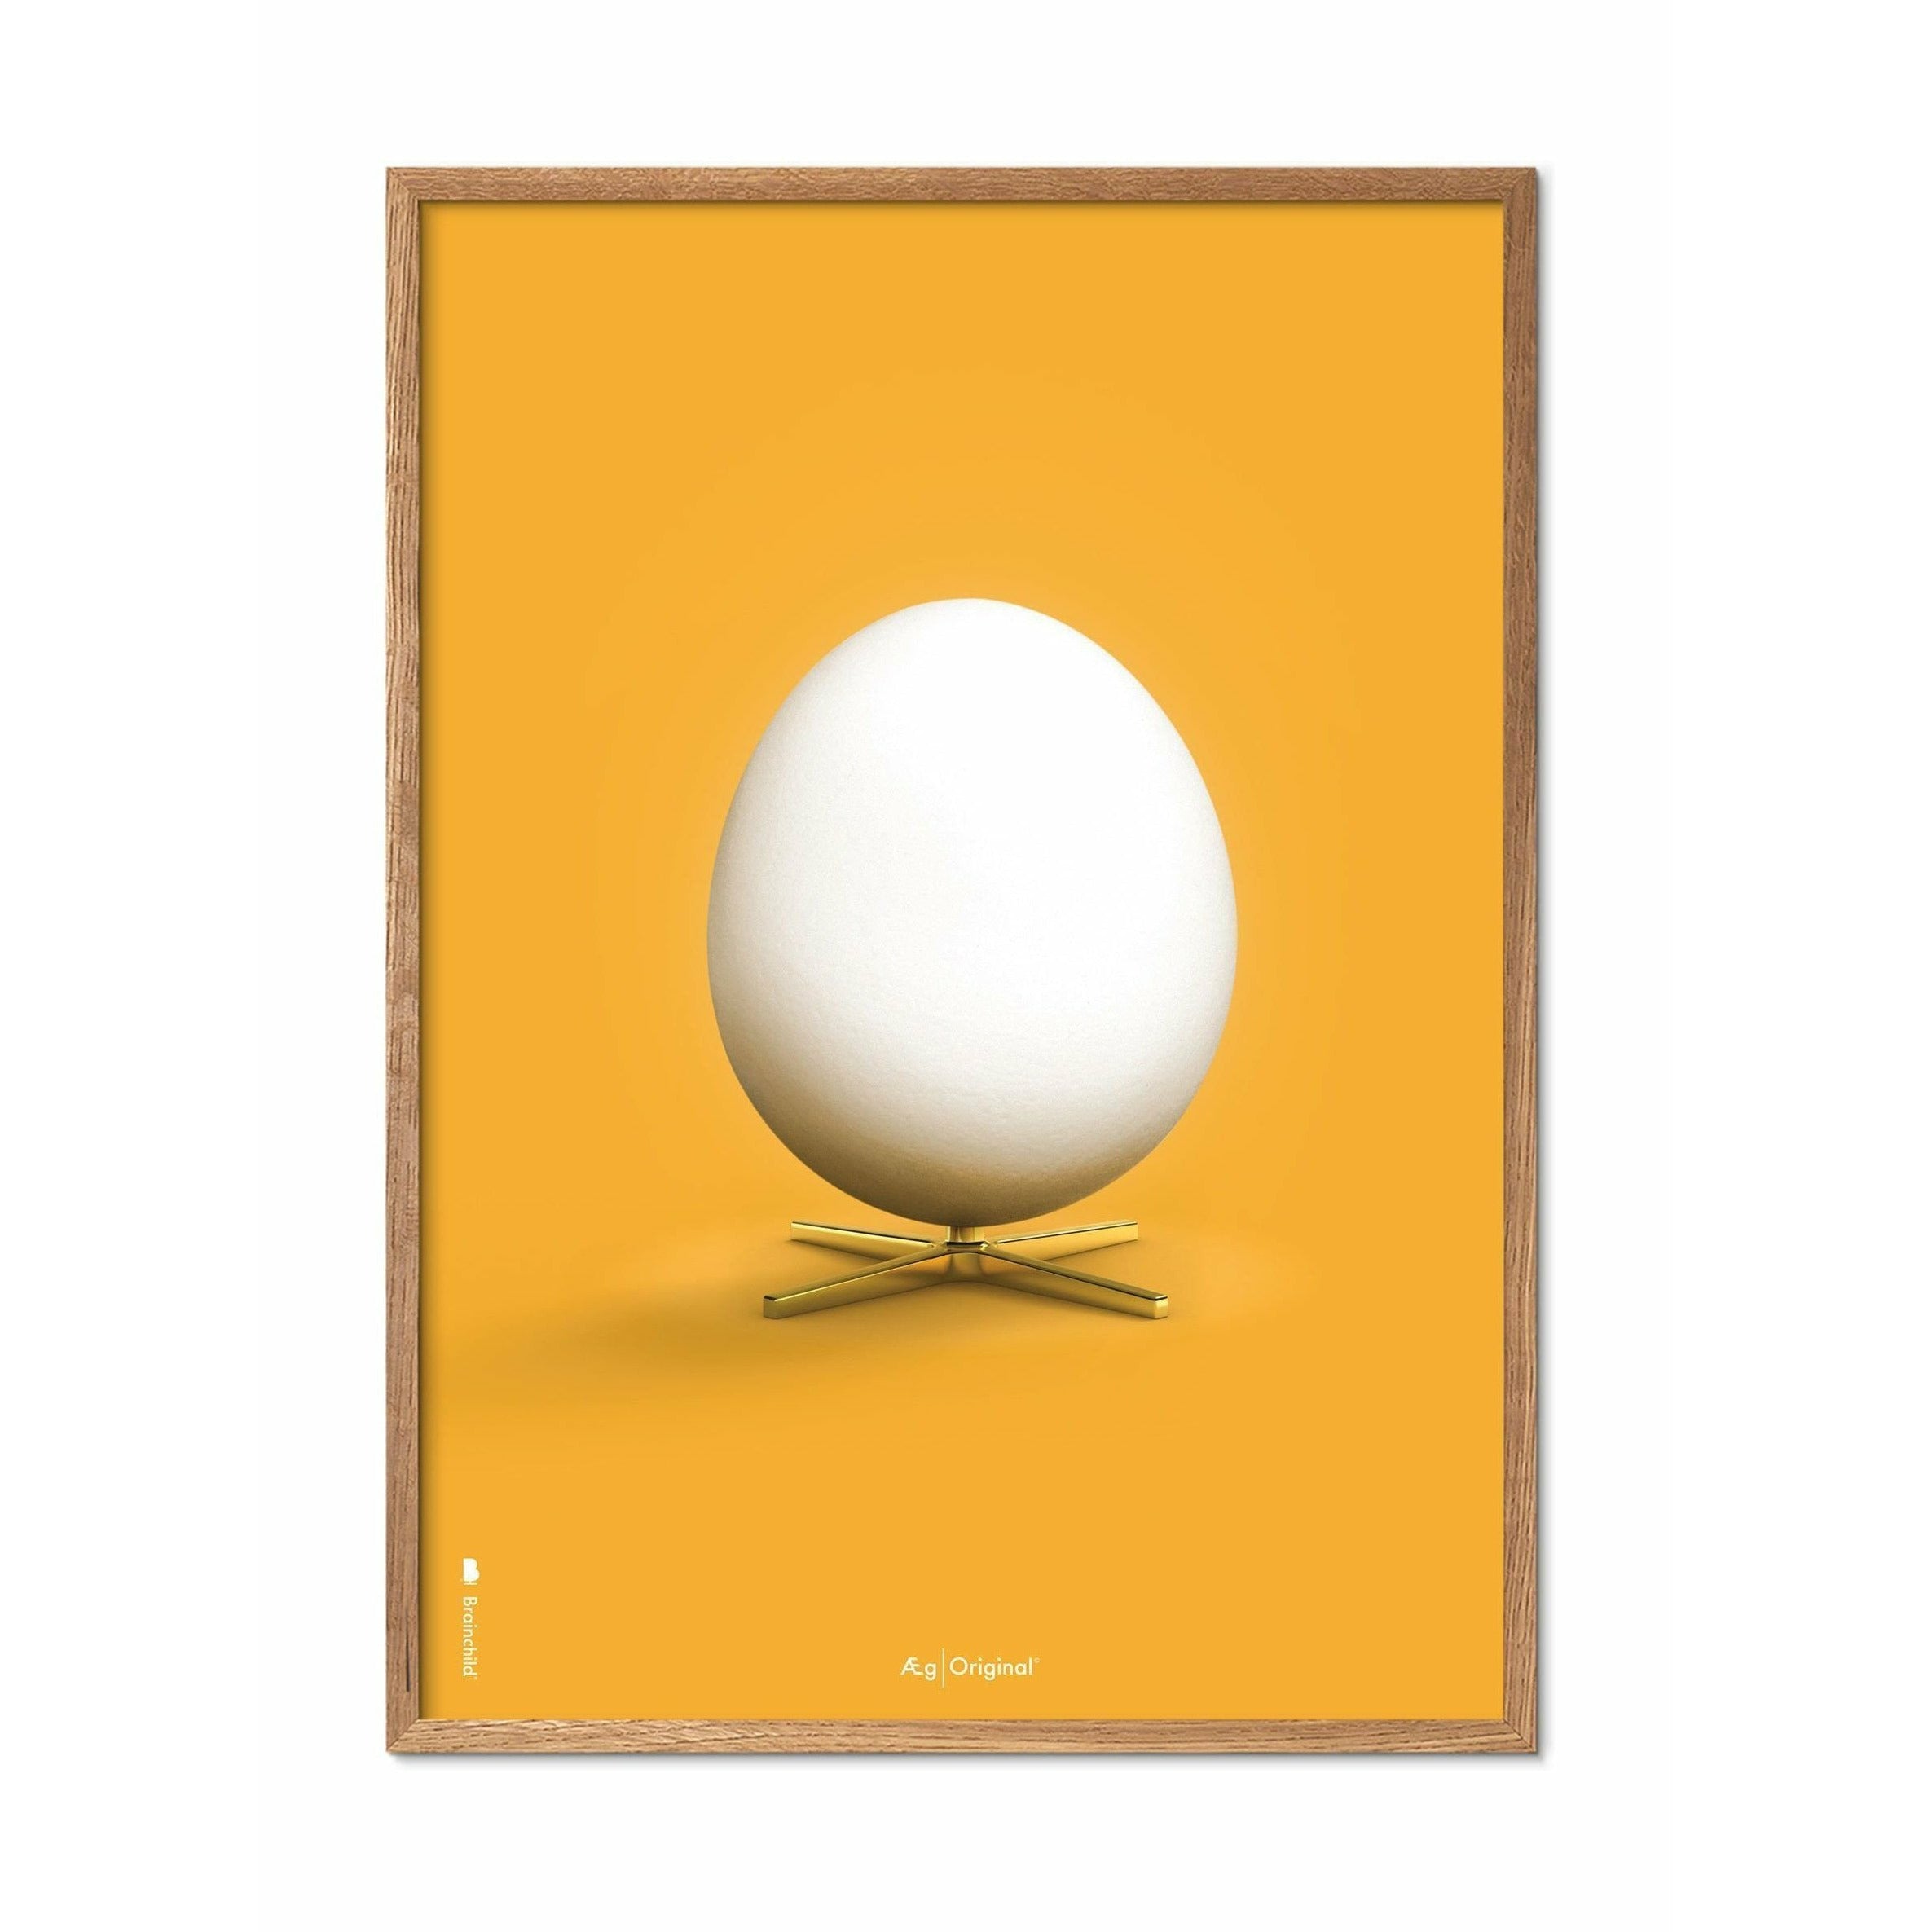 创生鸡蛋经典海报，由浅木制成的框架30x40厘米，黄色背景